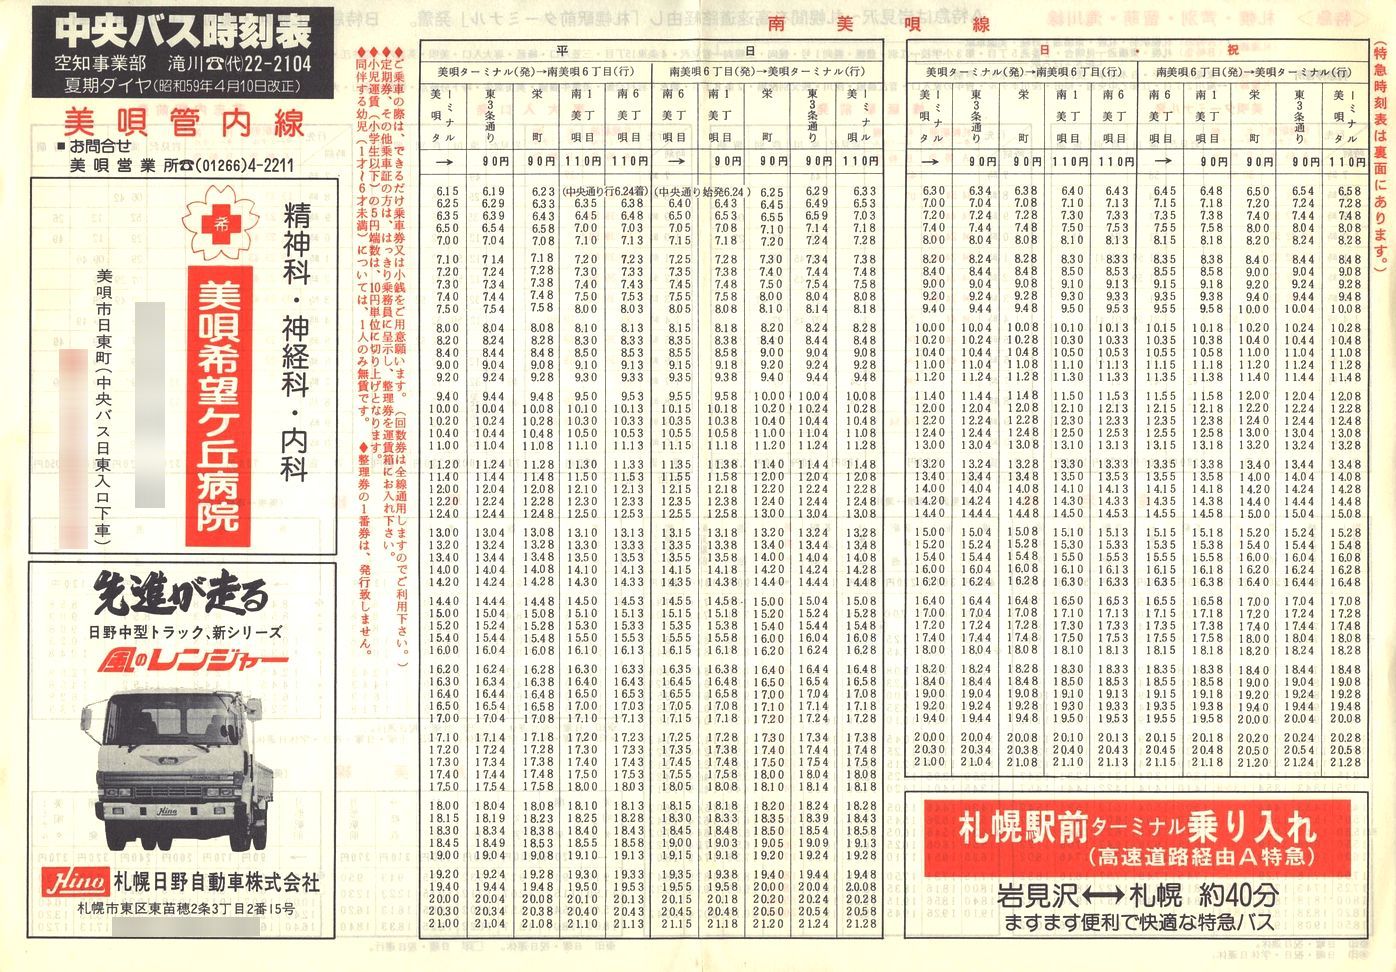 1984-04-10改正_北海道中央バス(空知)_美唄管内線時刻表表面